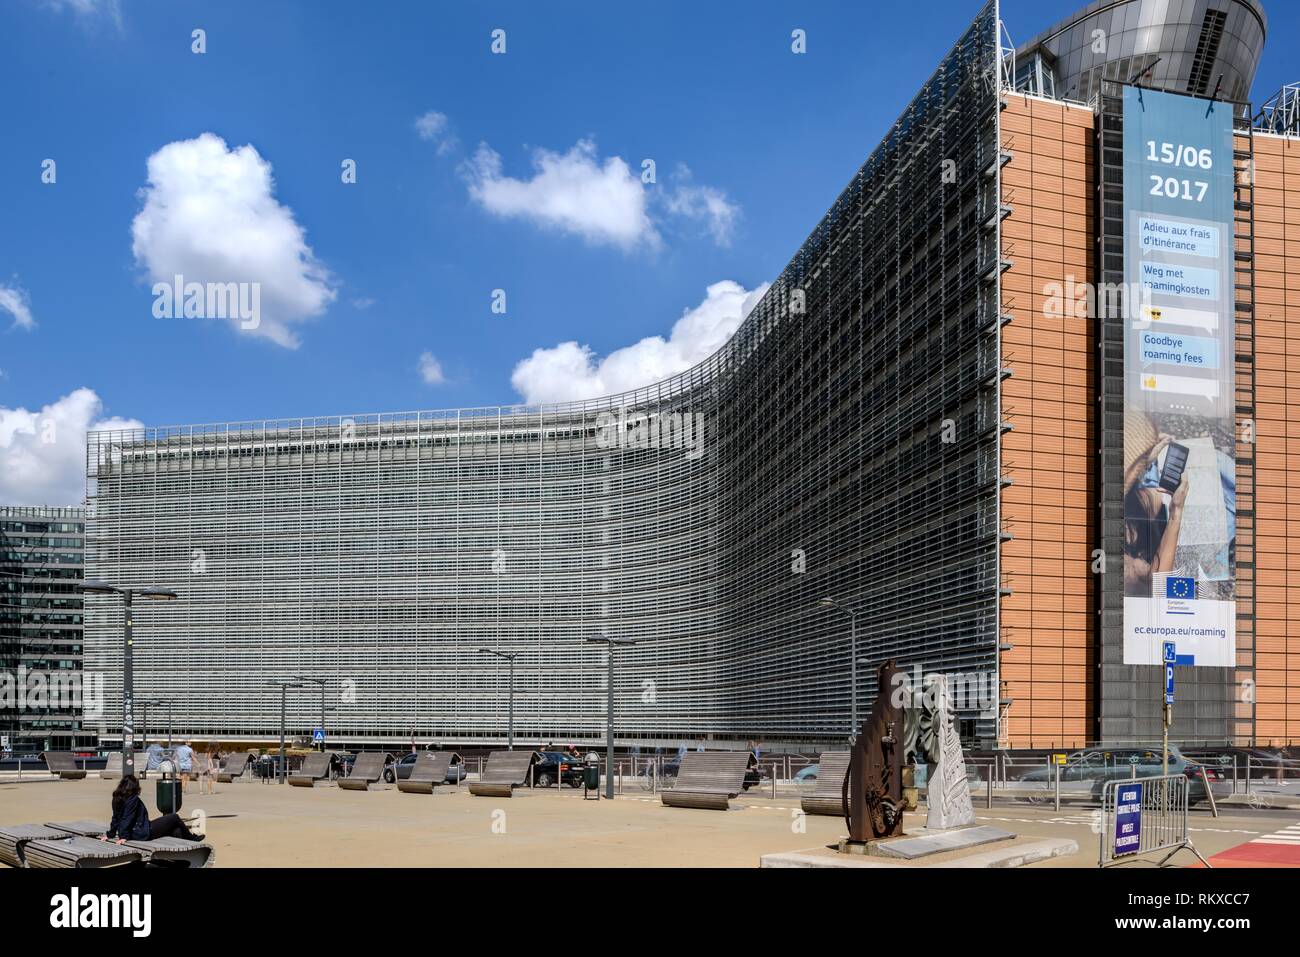 Brüssel, Europaviertel, Europäische Kommission, Berlaymont-Gebäude Das 1963 bis 1967 erbaute Berlaymont-Gebäude en Brüssel ist der Sitz der Europäisch Foto de stock